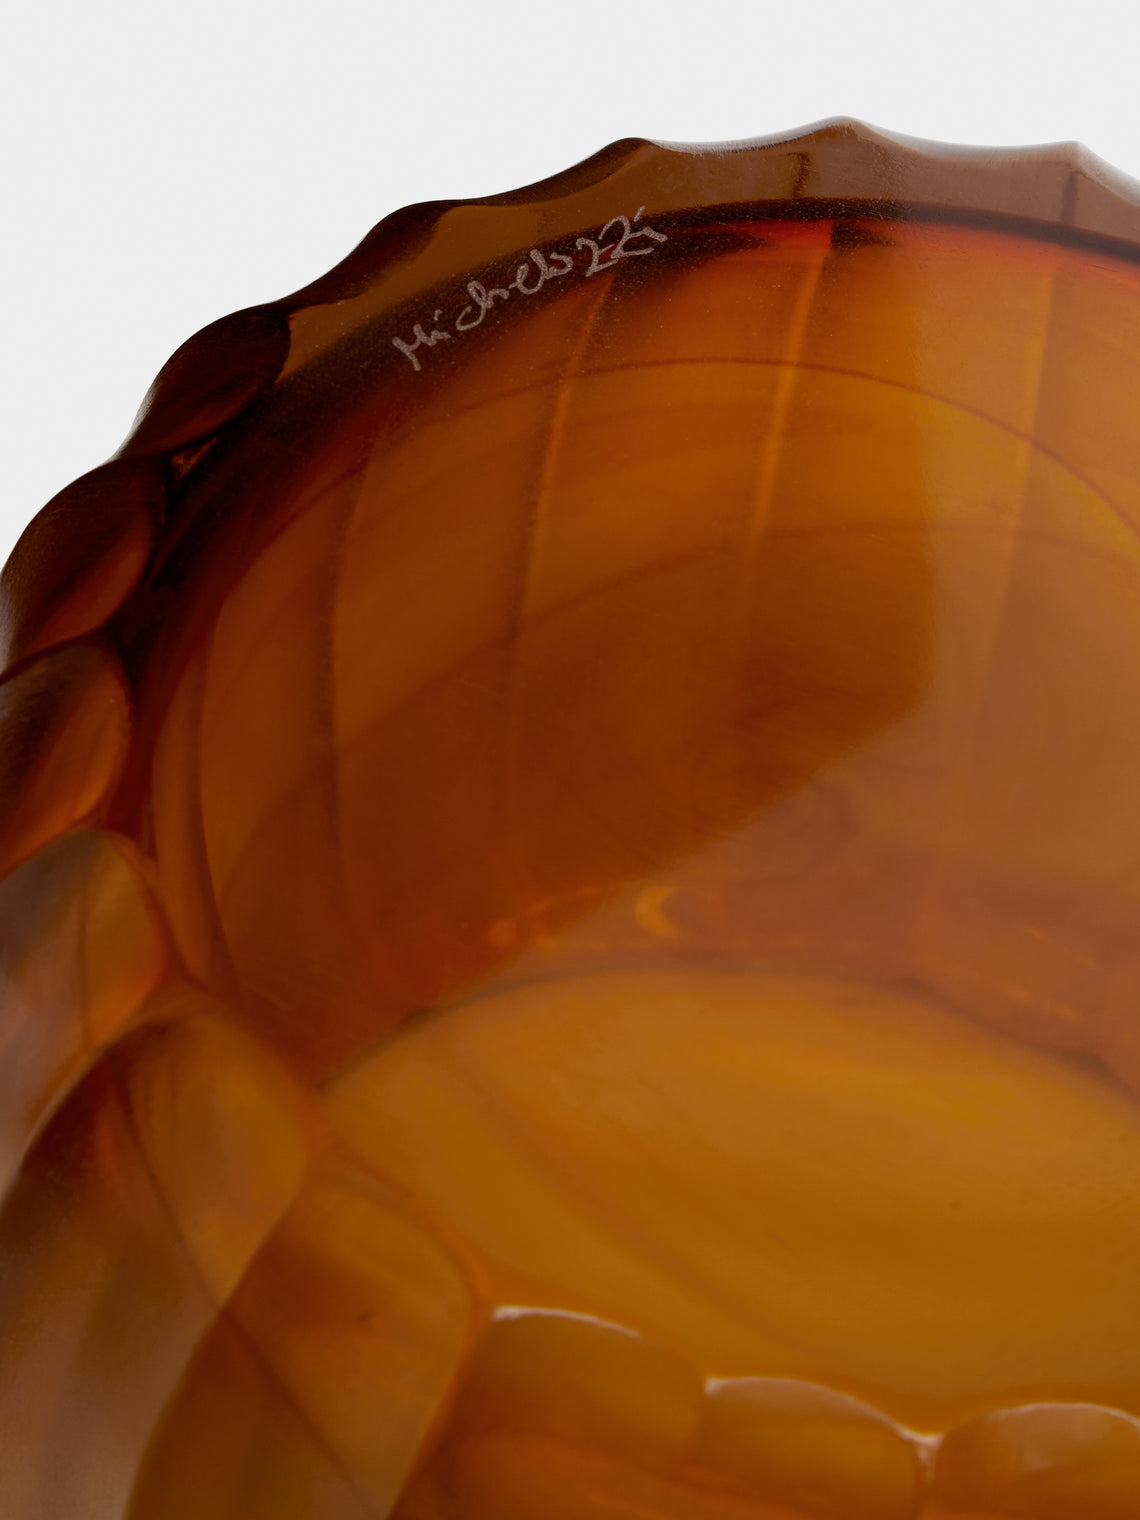 Micheluzzi Glass - Pozzo Miele Hand-Blown Murano Glass Vase - Yellow - ABASK